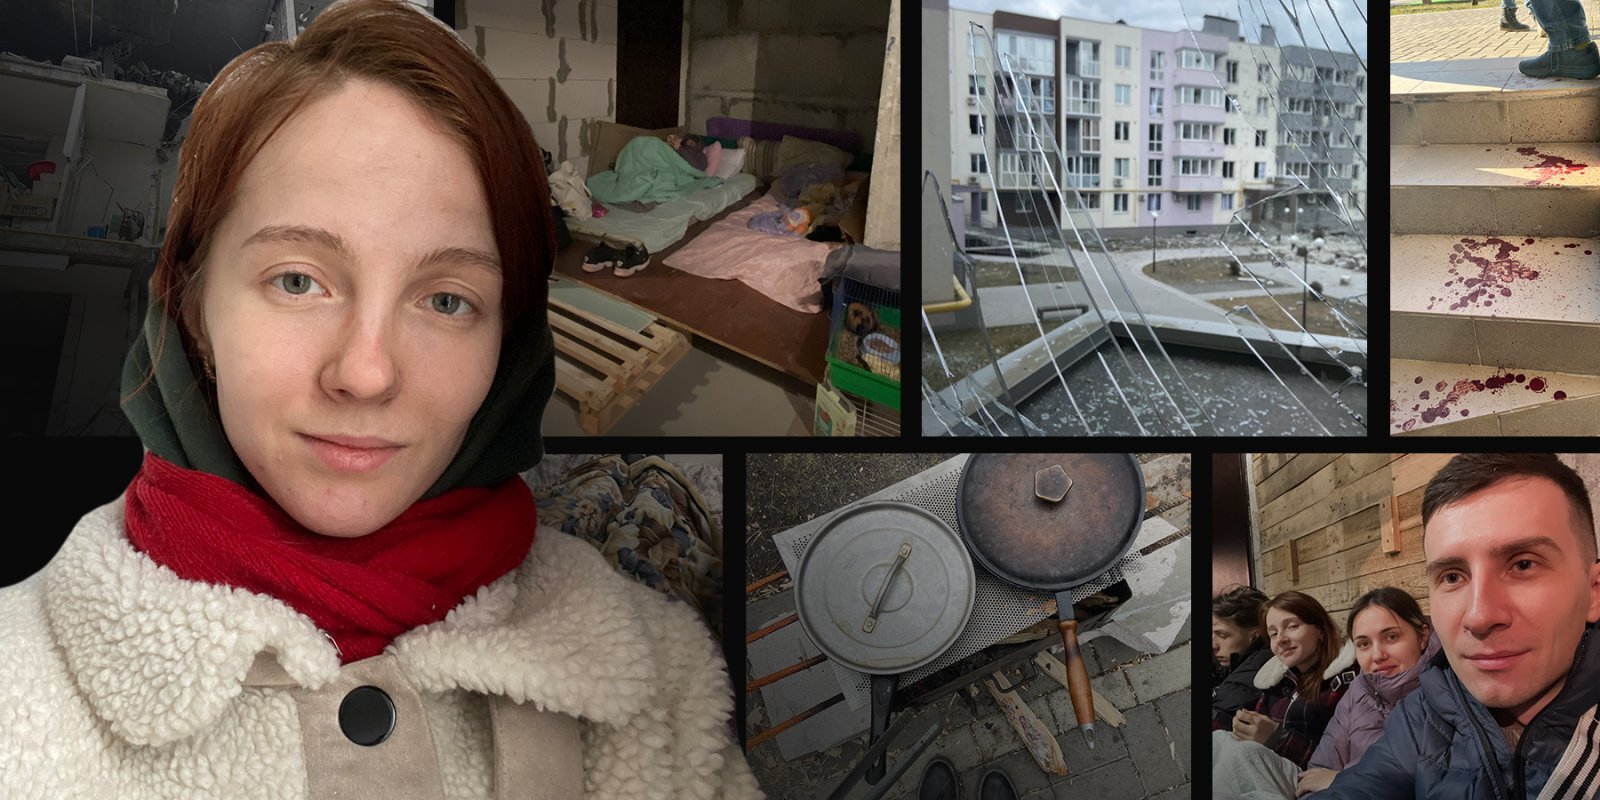 Ukrainiete pēc divām nedēļām asiņainās Bučas pagrabā: šobrīd droši nejustos arī Latvijā